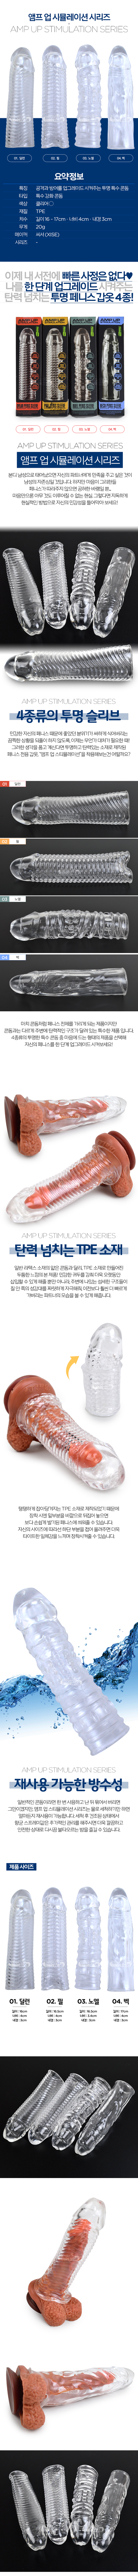 [특수 콘돔] 앰프 업 시뮬레이션 시리즈(Amp Up Stimulation Series)